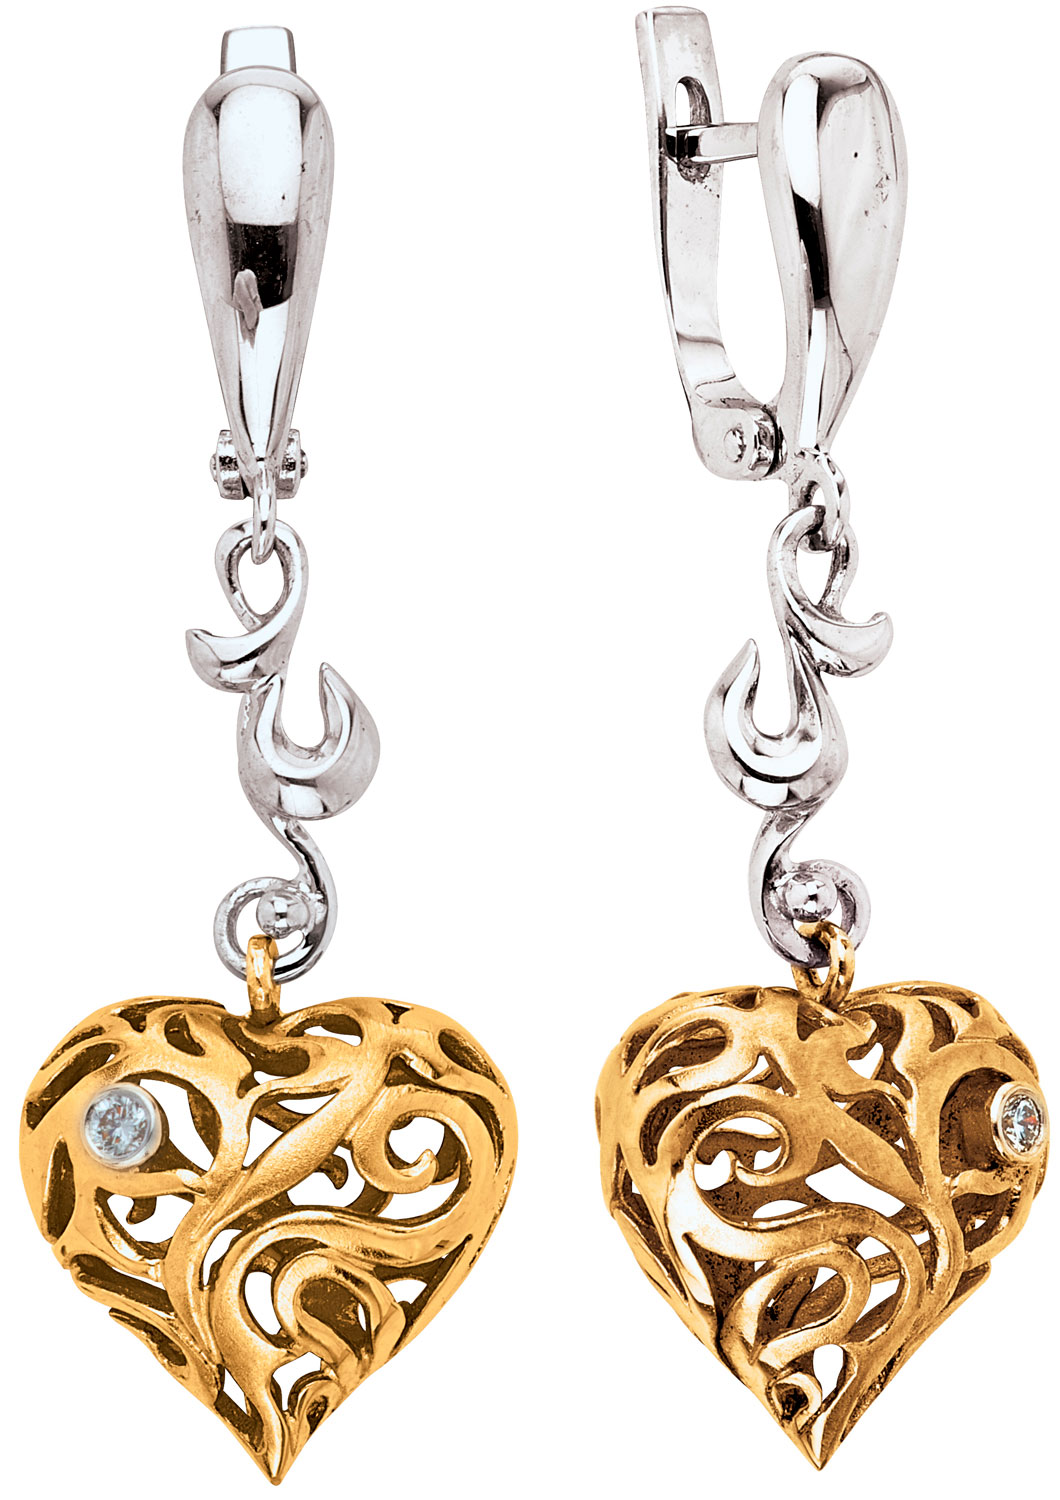 Золотые серьги с подвесками ''Сердце'' Альдзена S-41019 с бриллиантами